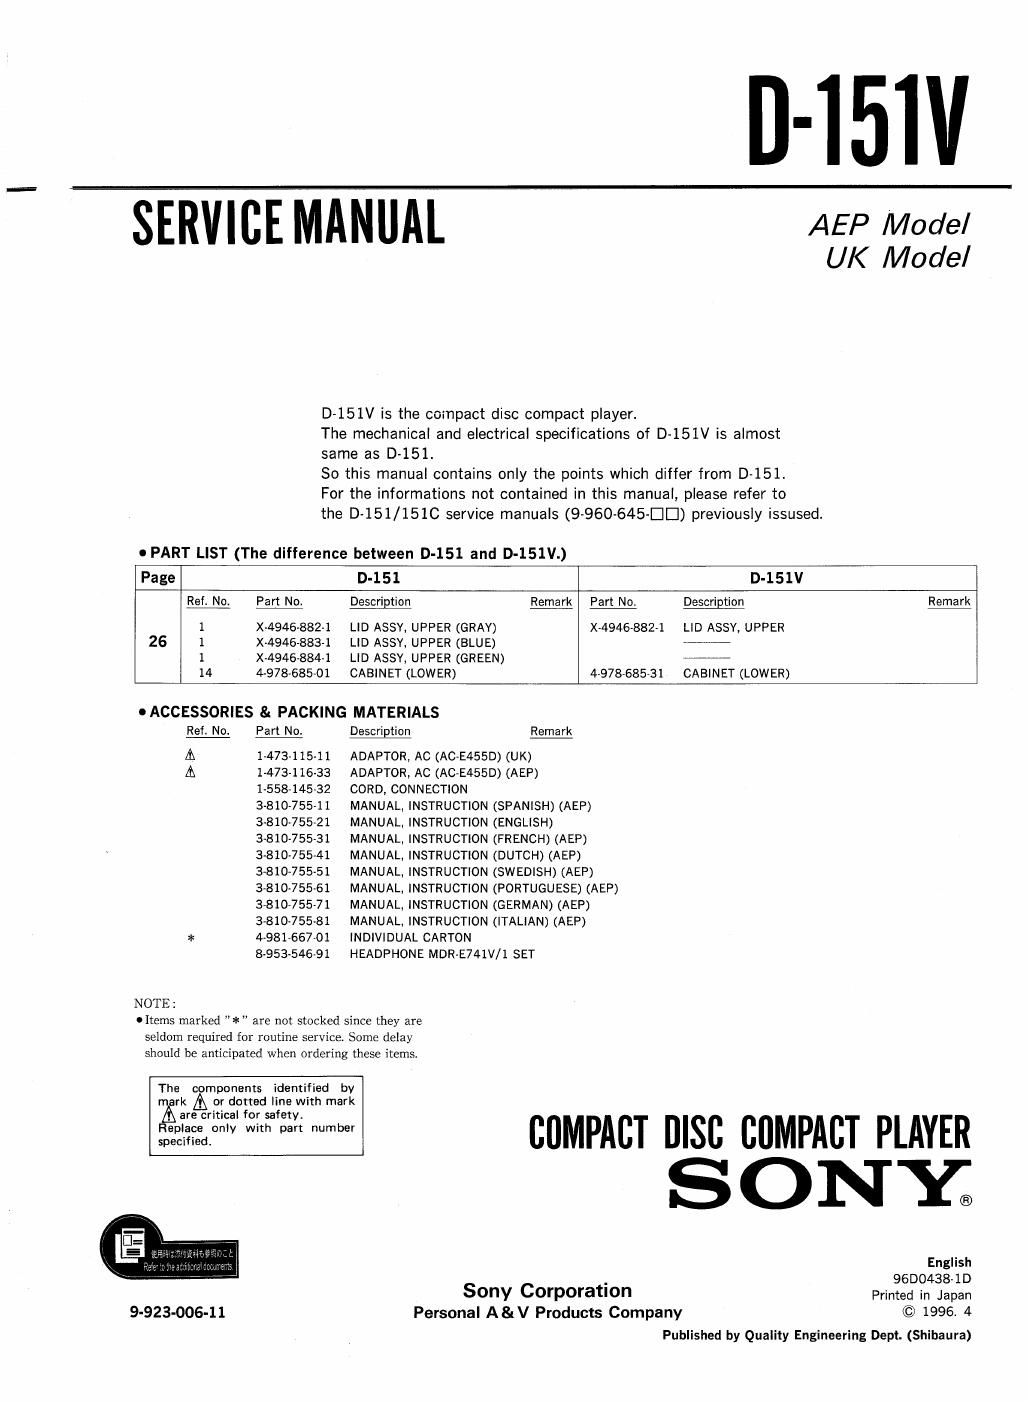 sony d 151 v service manual